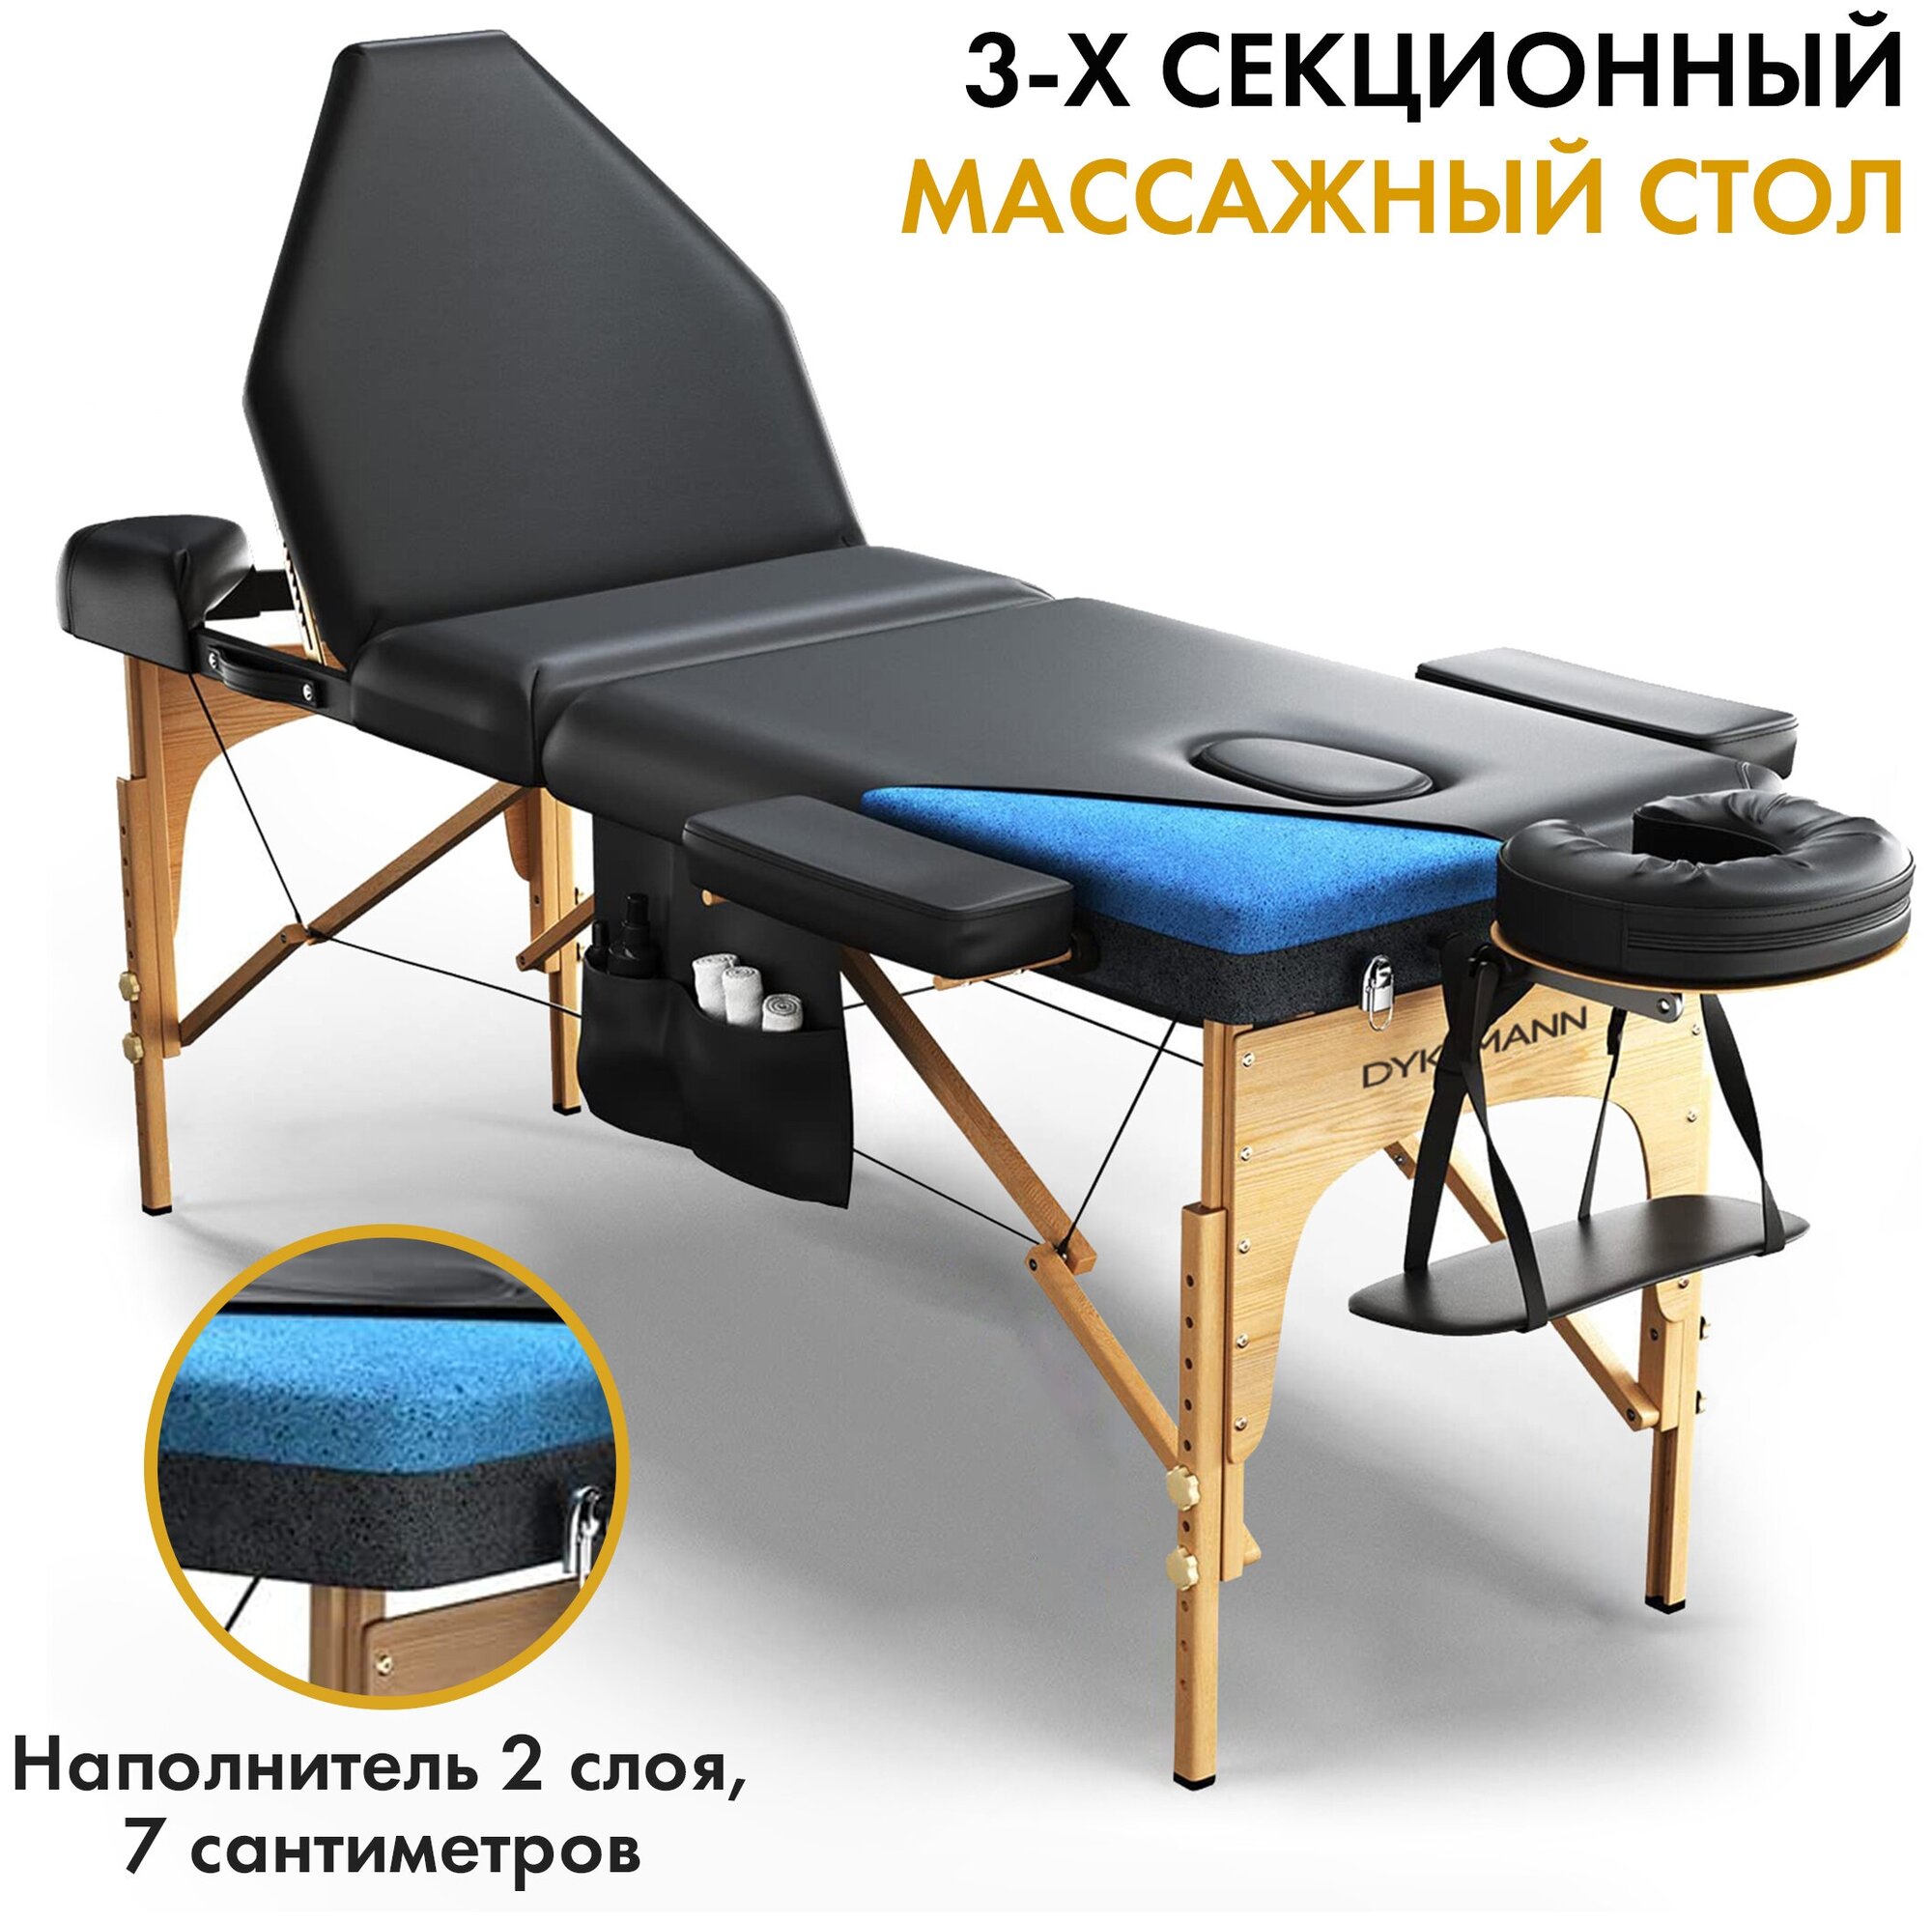 Массажный стол Dykemann Formgedachtnis G-300B/Стол для массажа 3-х секционный/Портативный массажный стол/Косметологическая кушетка